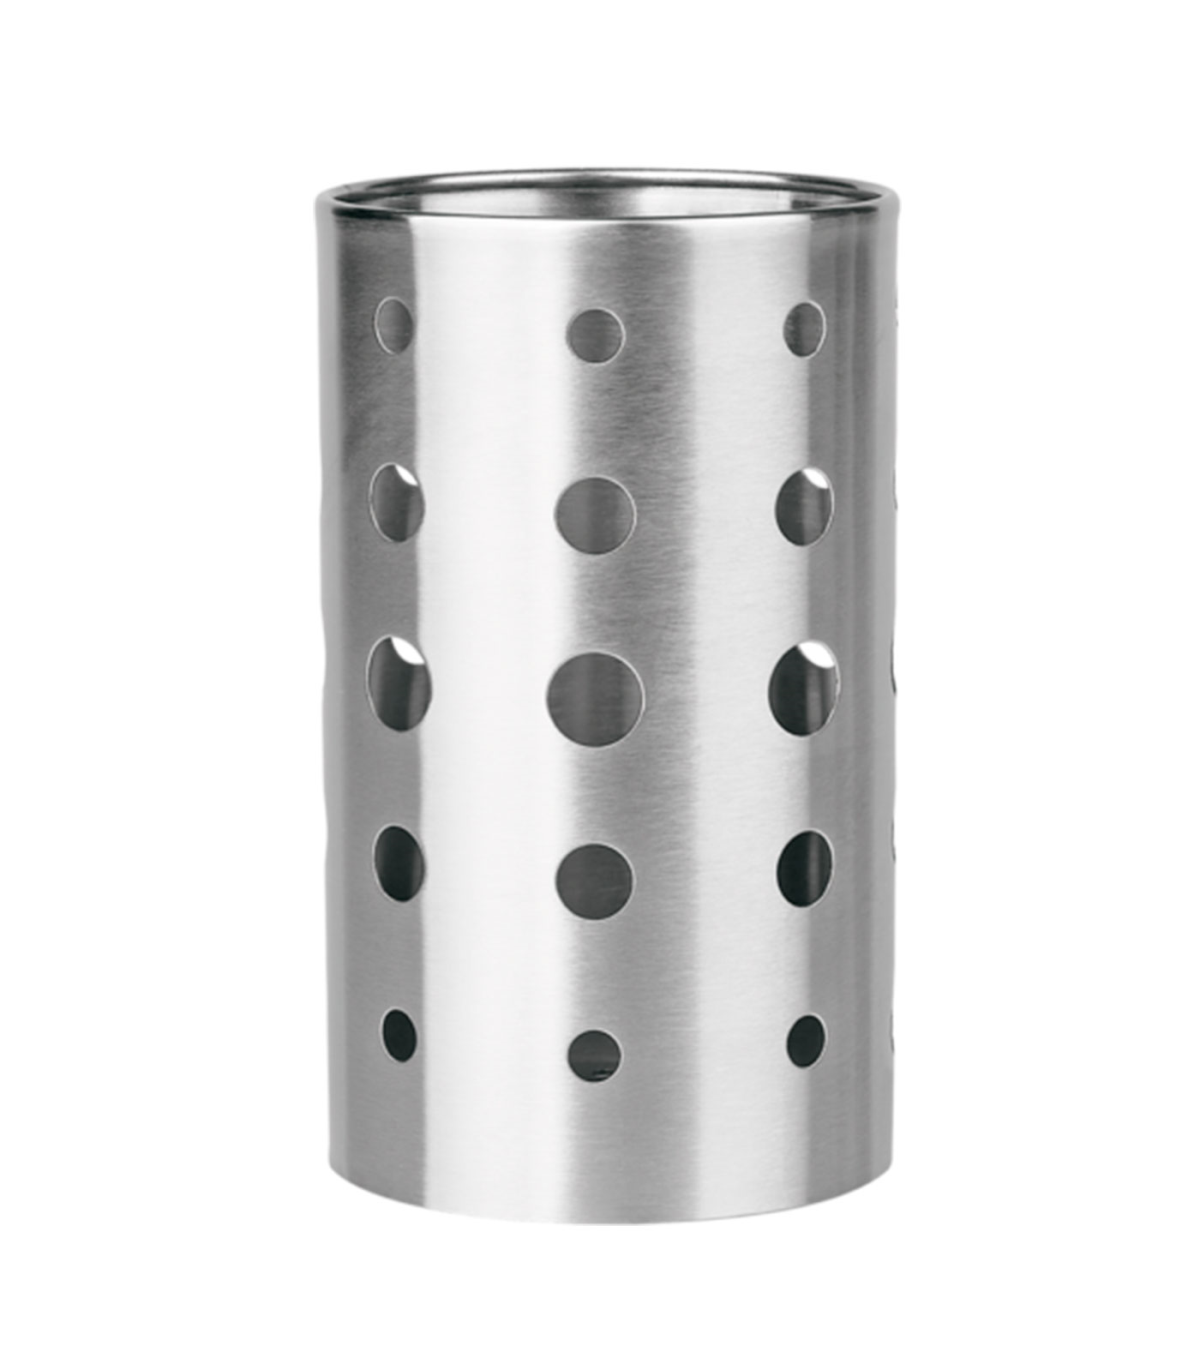 Tradineur - Escurrecubiertos cilindrico de acero inoxidable, portacubiertos  de cocina, secar cubertería, 14 x 12 cm